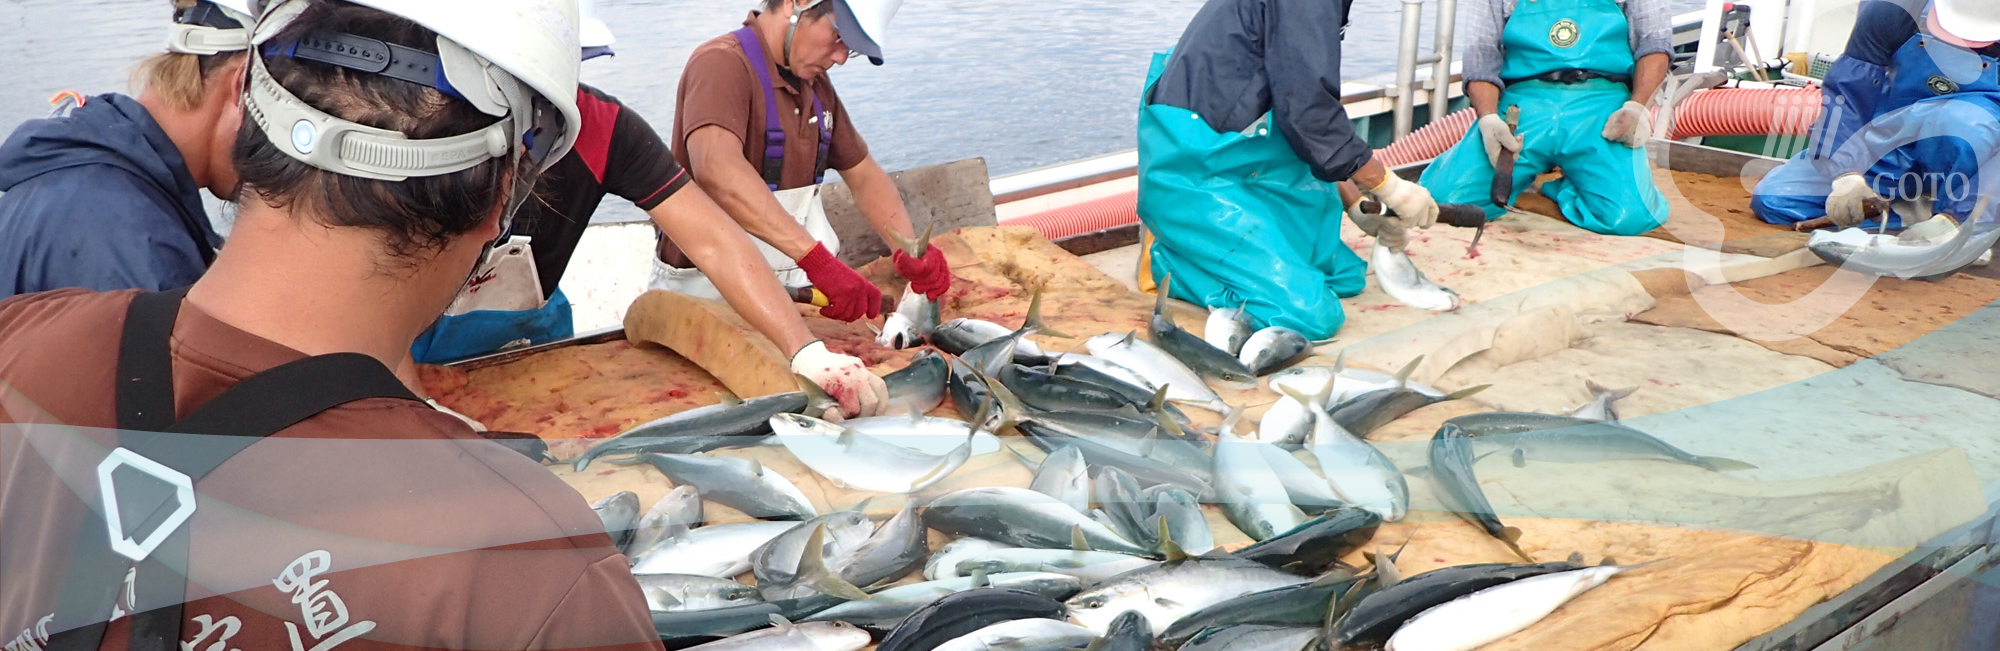 五島の夏の魚 五島の旬の魚 長崎県 五島漁業協同組合 五島漁協公式サイト